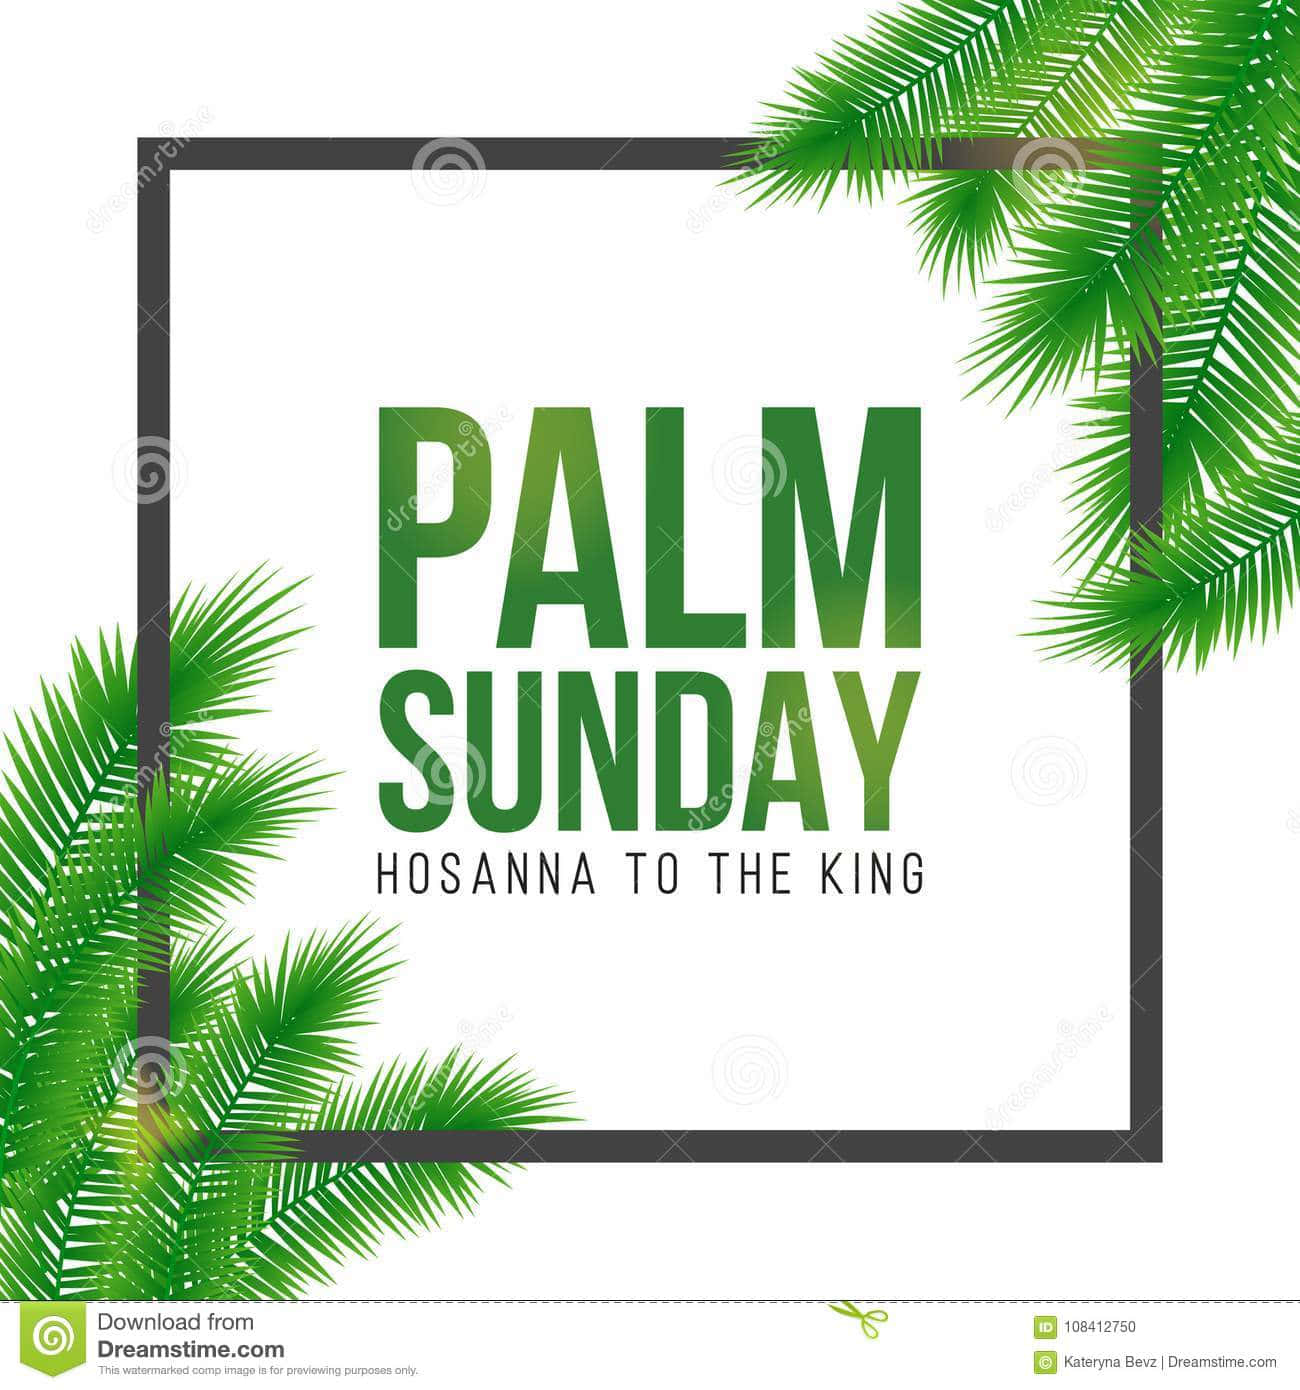 Palm Sunday Commemorates Jesus' Triumphal Entry Into Jerusalem